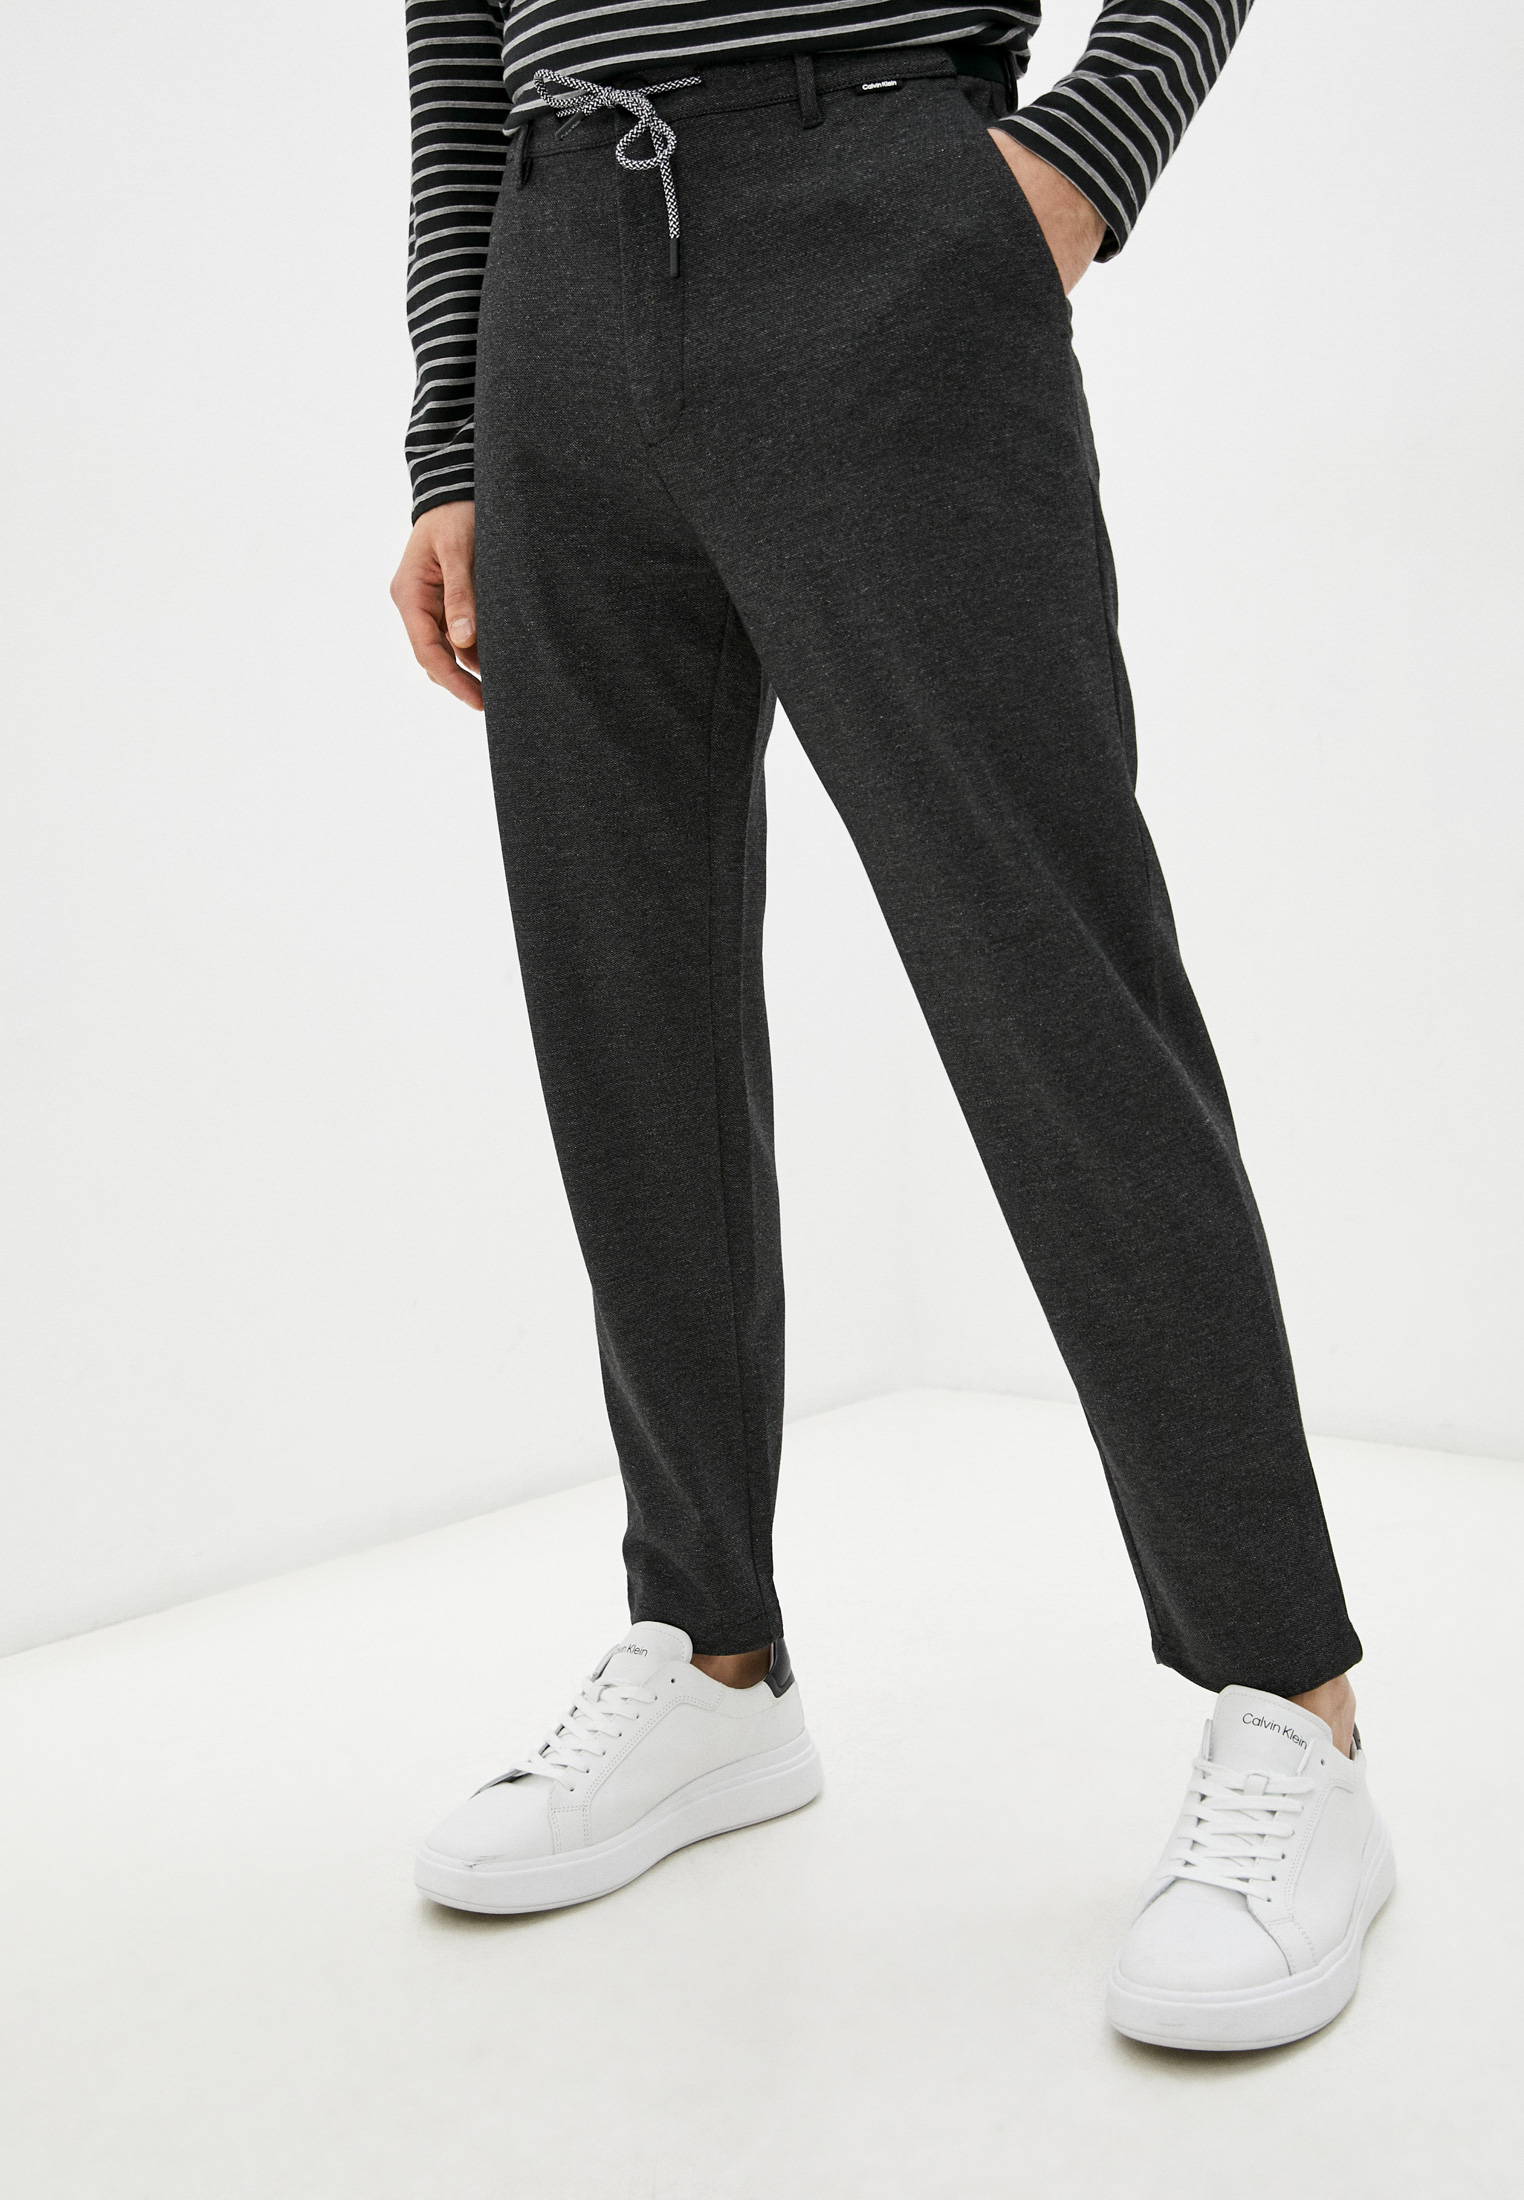 Мужские брюки Calvin Klein (Кельвин Кляйн) K10K107493: изображение 1